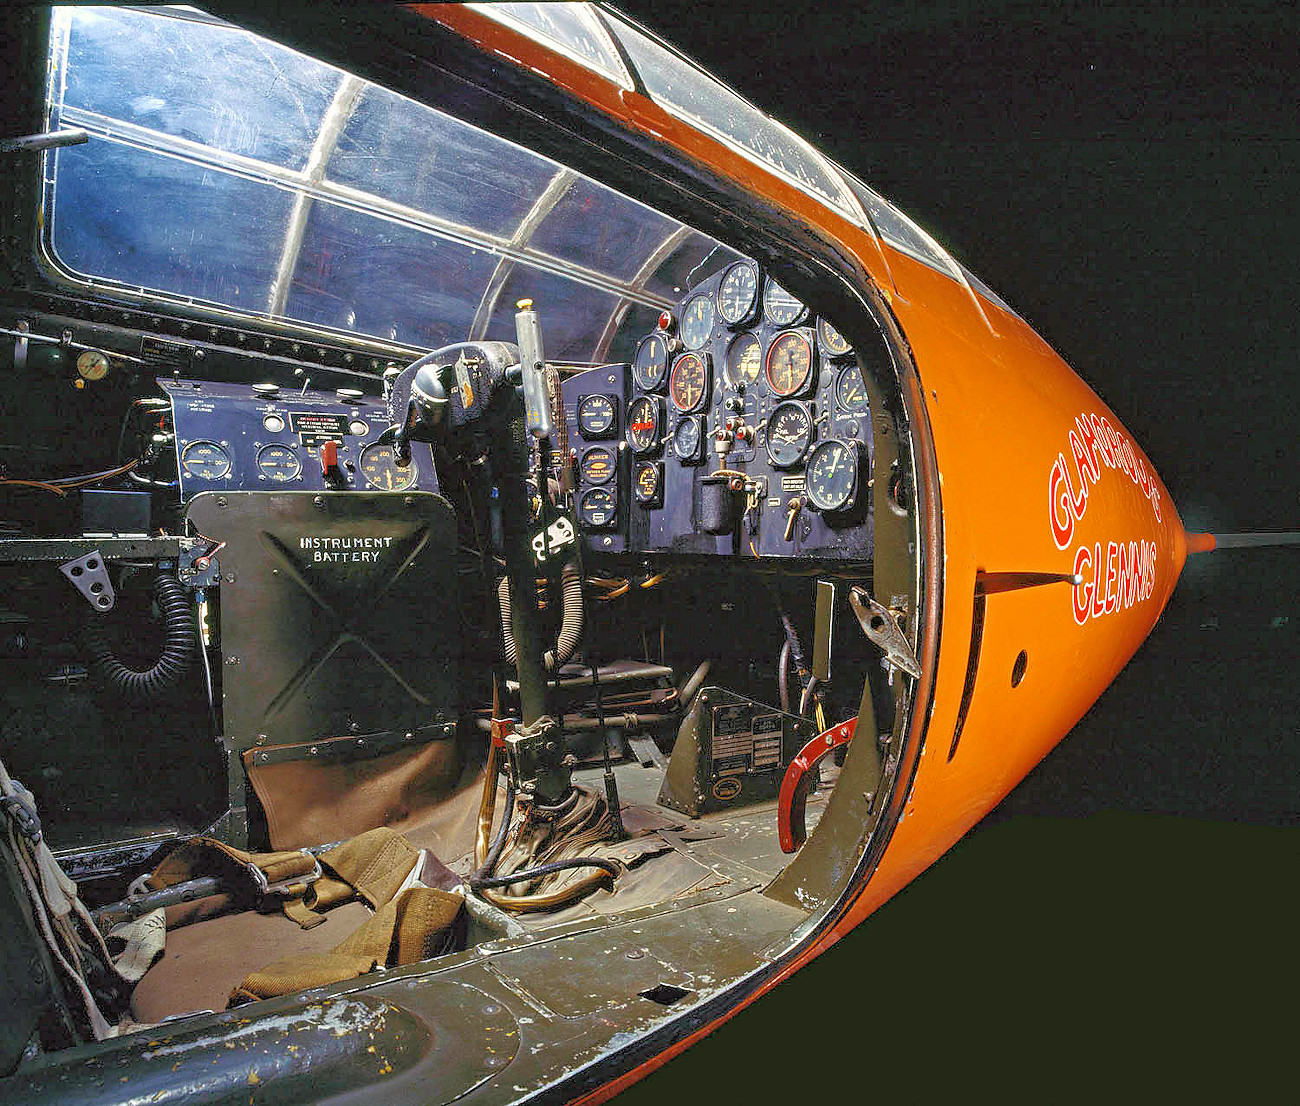 Bell X-1 Glamorous Glennis - Cockpit